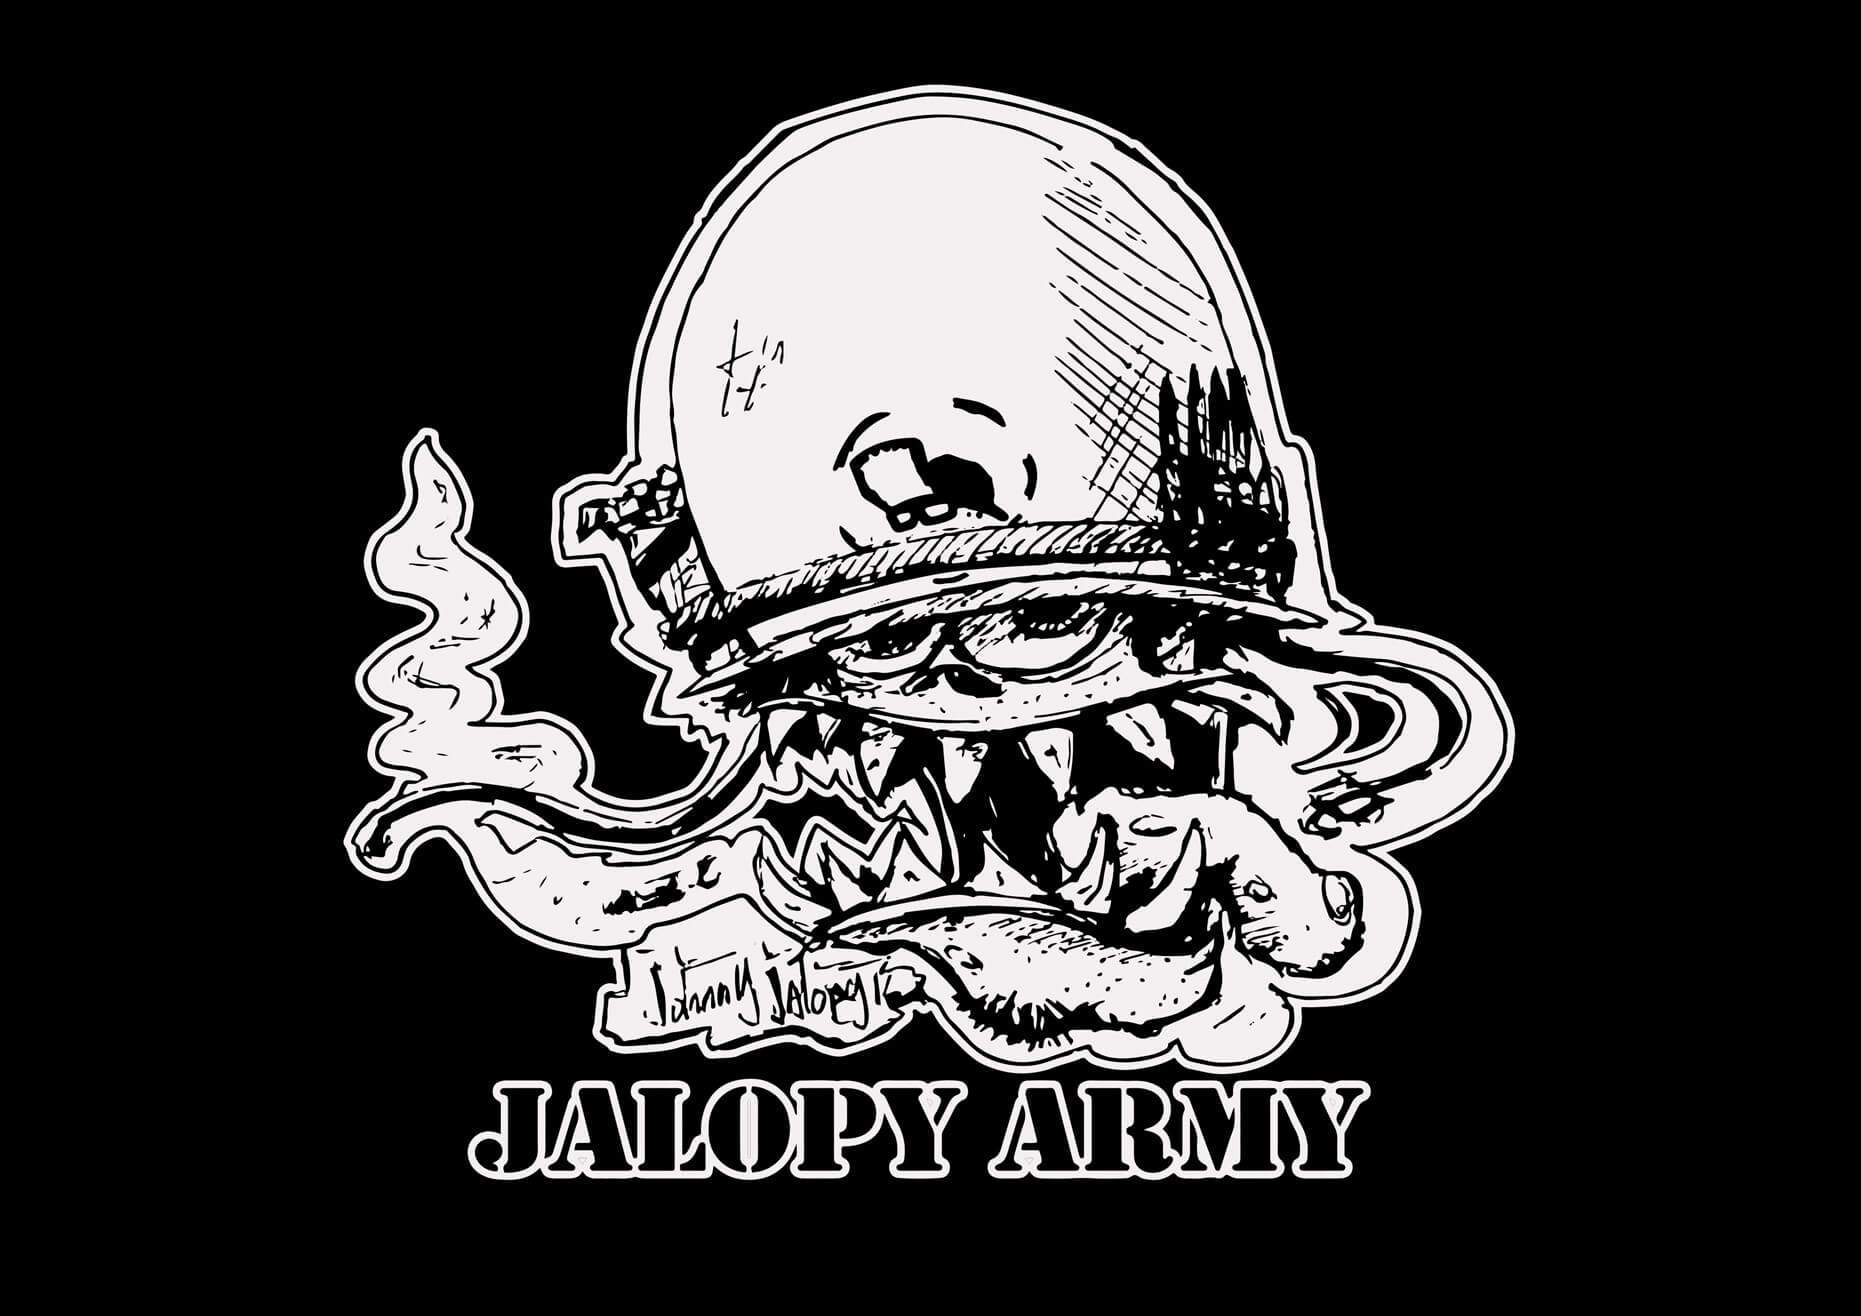 Jalopy Army